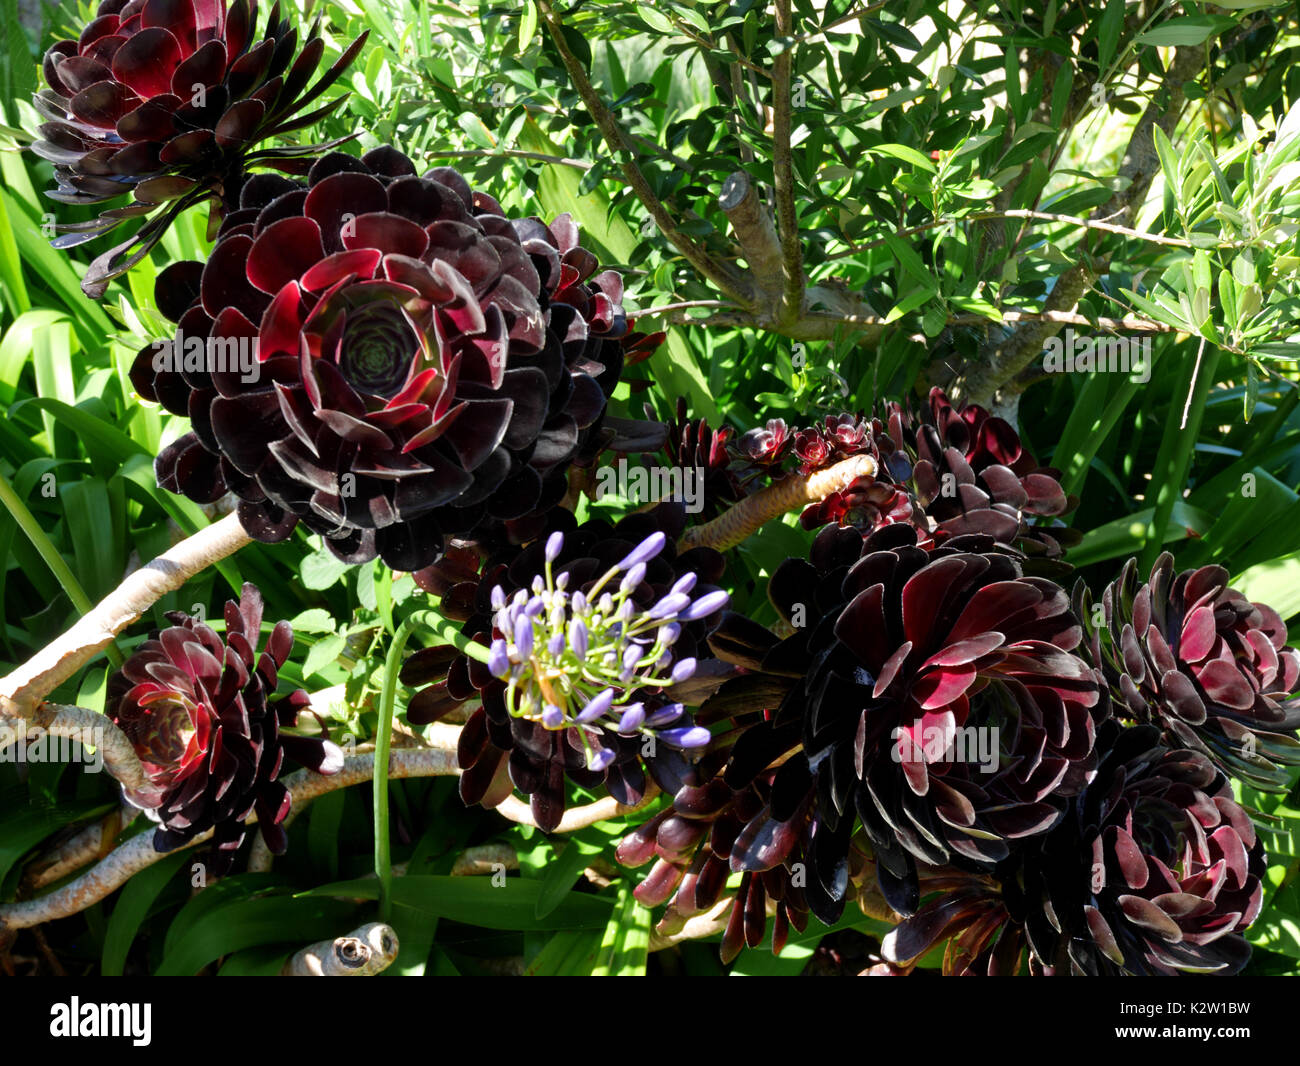 Aeonium arboreum 'Schwarzkopf', qui transforme une couleur violet foncé à noir, sont communs dans les Scilly. Celui-ci est de plus en plus sur l'île de Saint Martin, les Îles Scilly. Banque D'Images